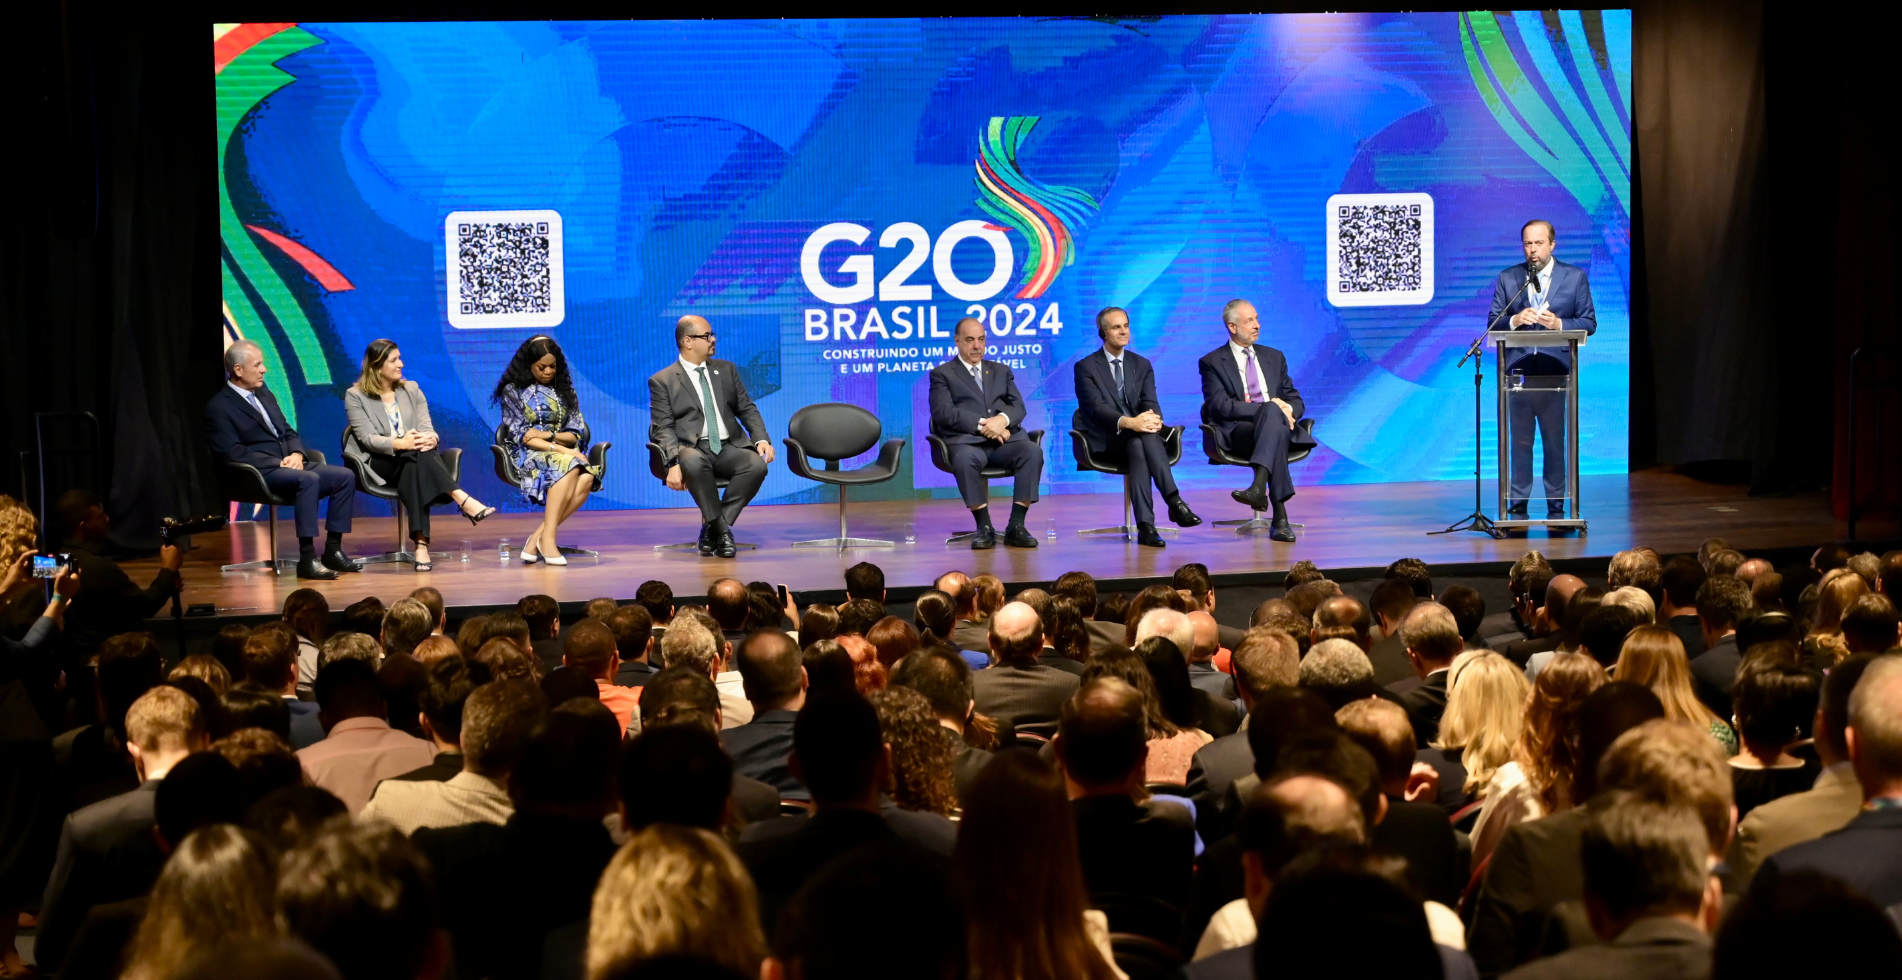 Encontro com representantes das vinte maiores economias do mundo acontece, em Belo Horizonte (MG), até quarta-feira (29/05)